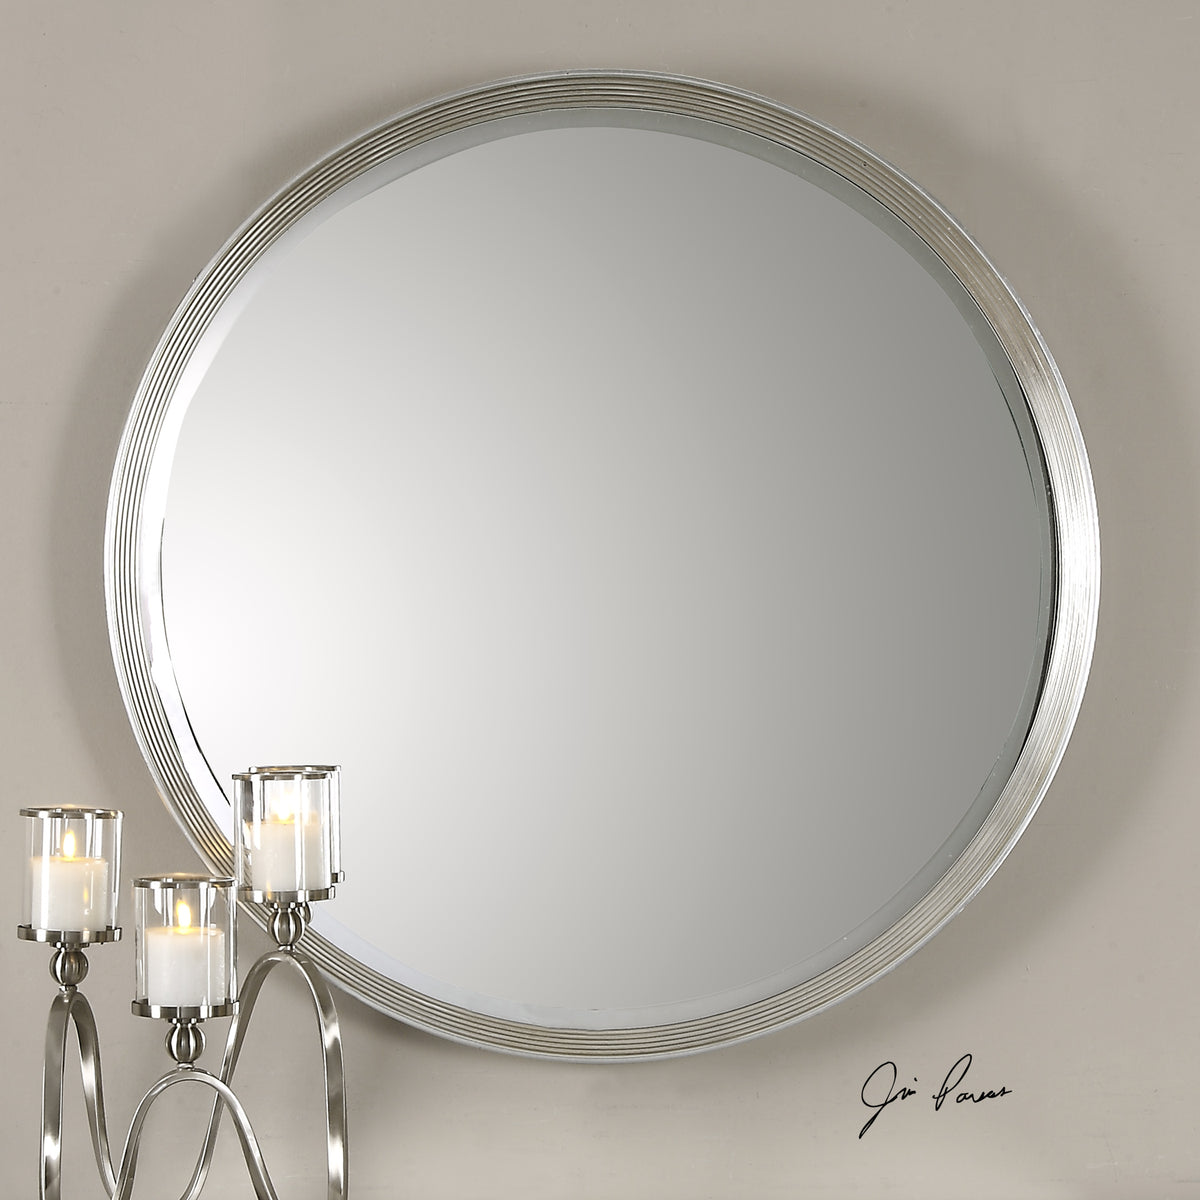 Serenza Round Mirror